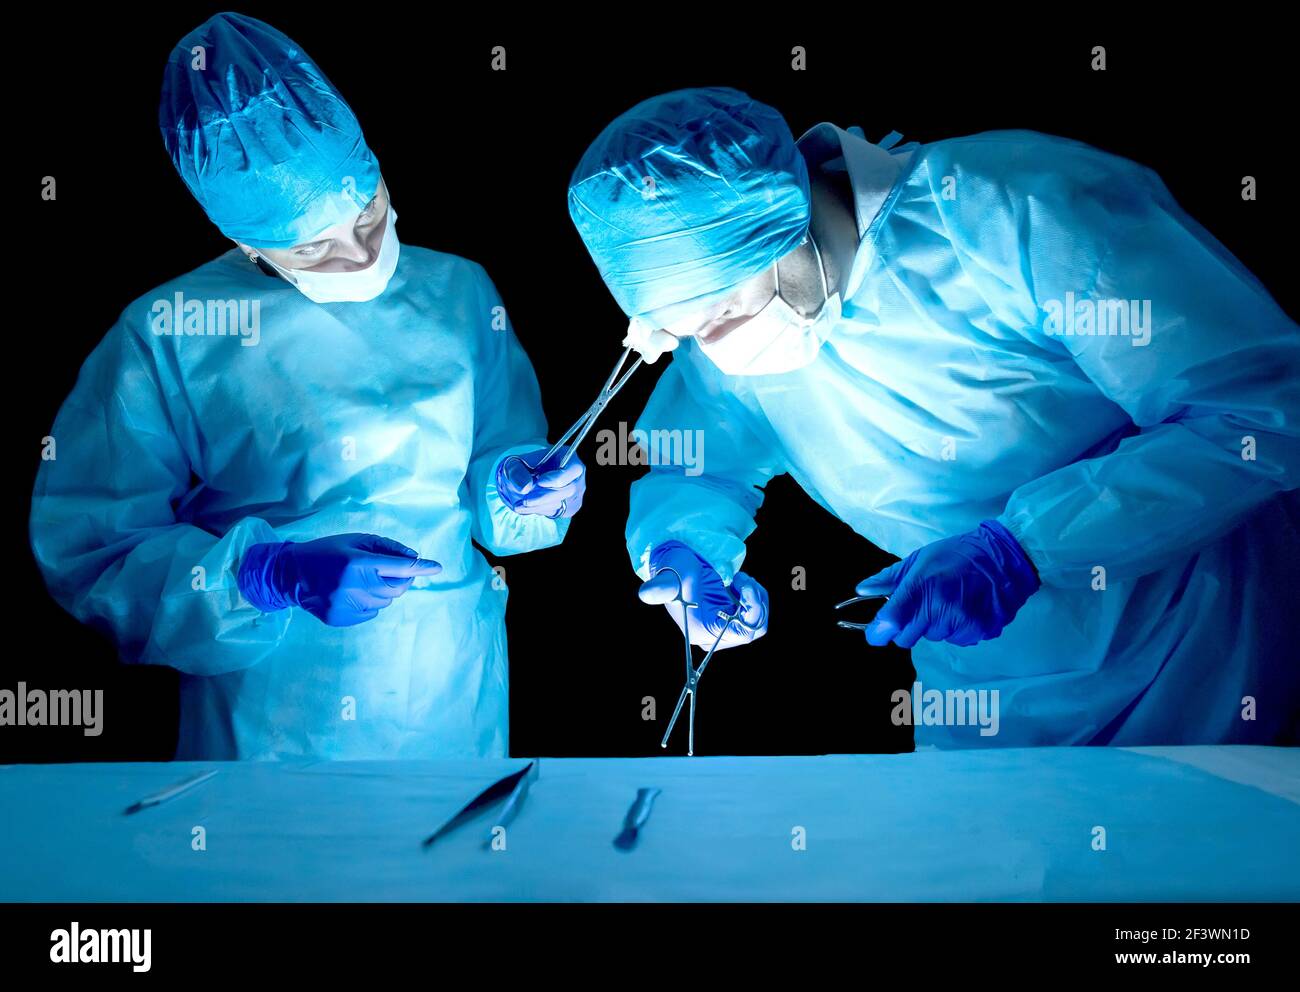 Zwei Neurochirurgen-Ärzte, eine Frau und ein Mann führen eine komplexe Operation durch. Konzept der Kategorie der Komplexität und Dauer der Operationsopera Stockfoto